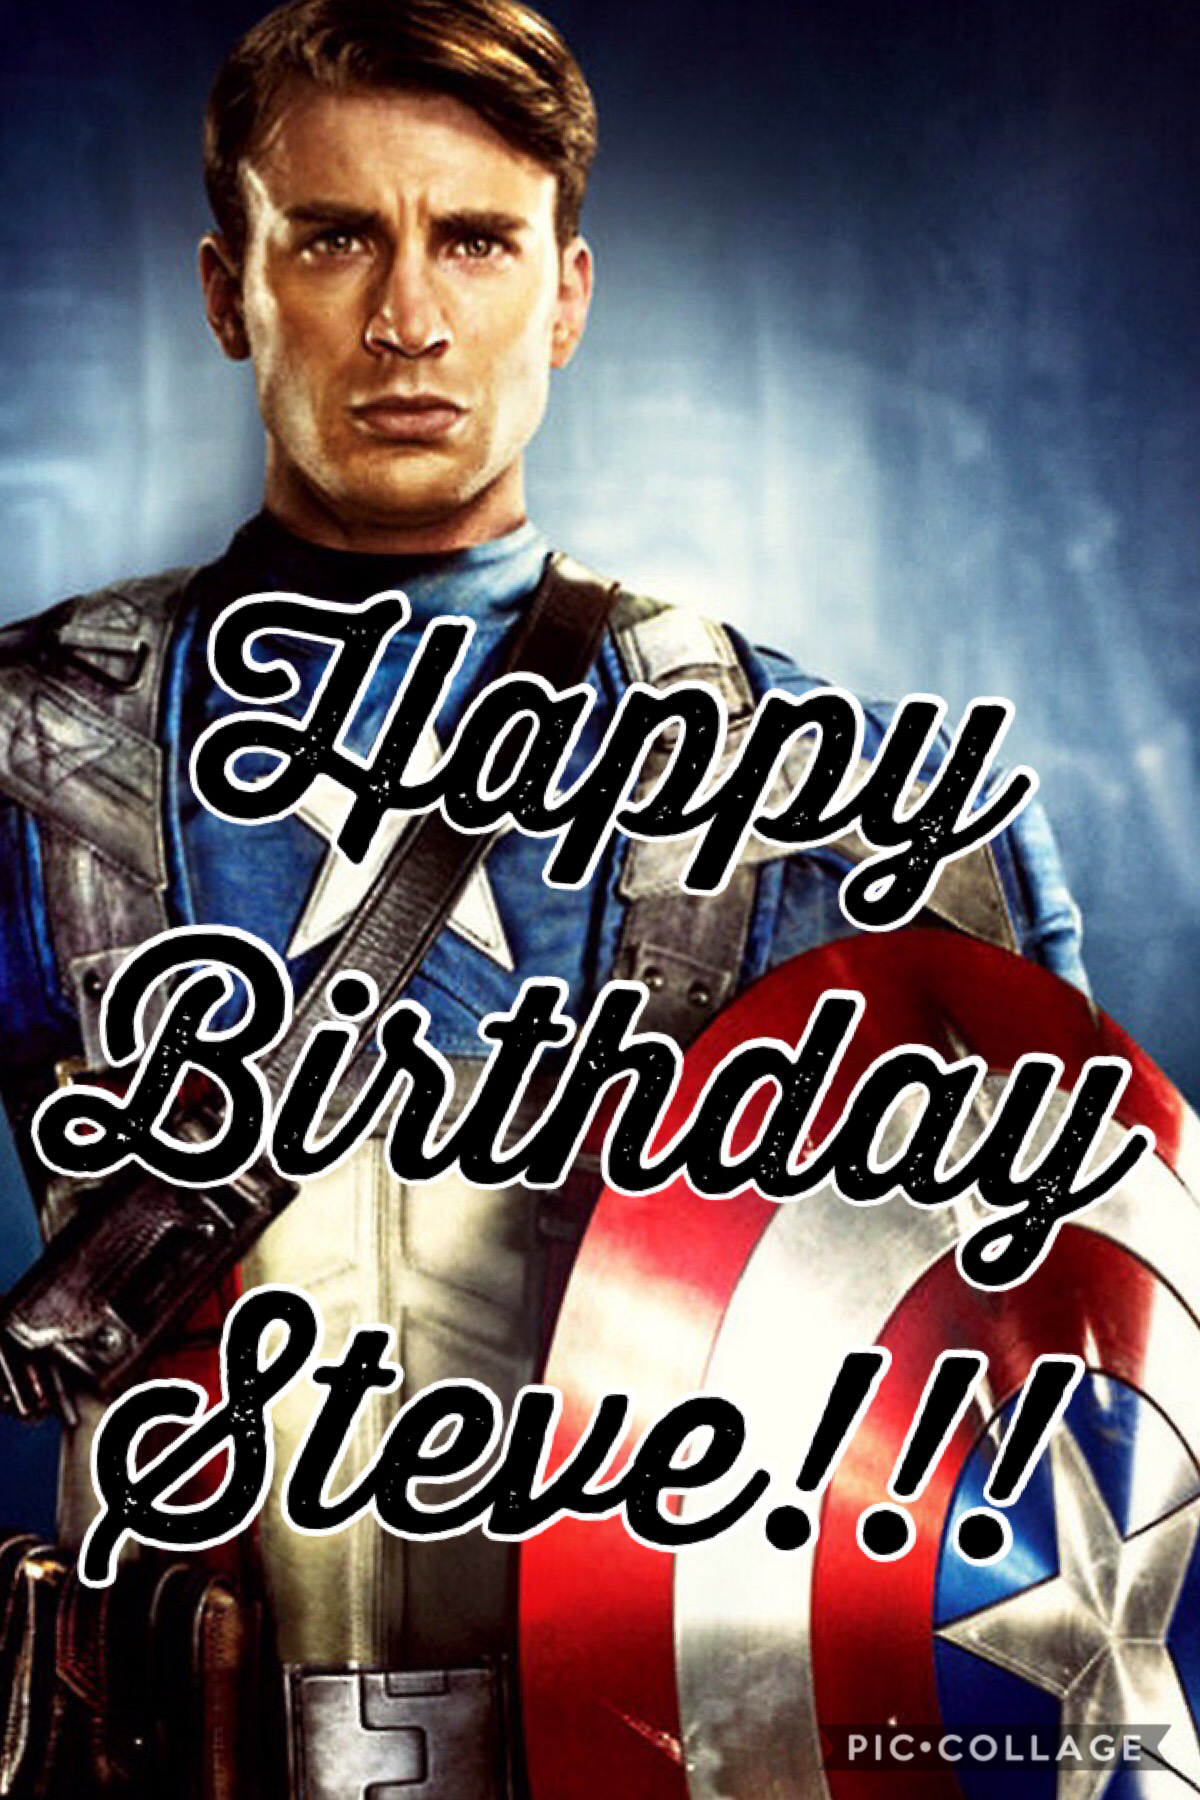 Happy Birthday Captain America!!!